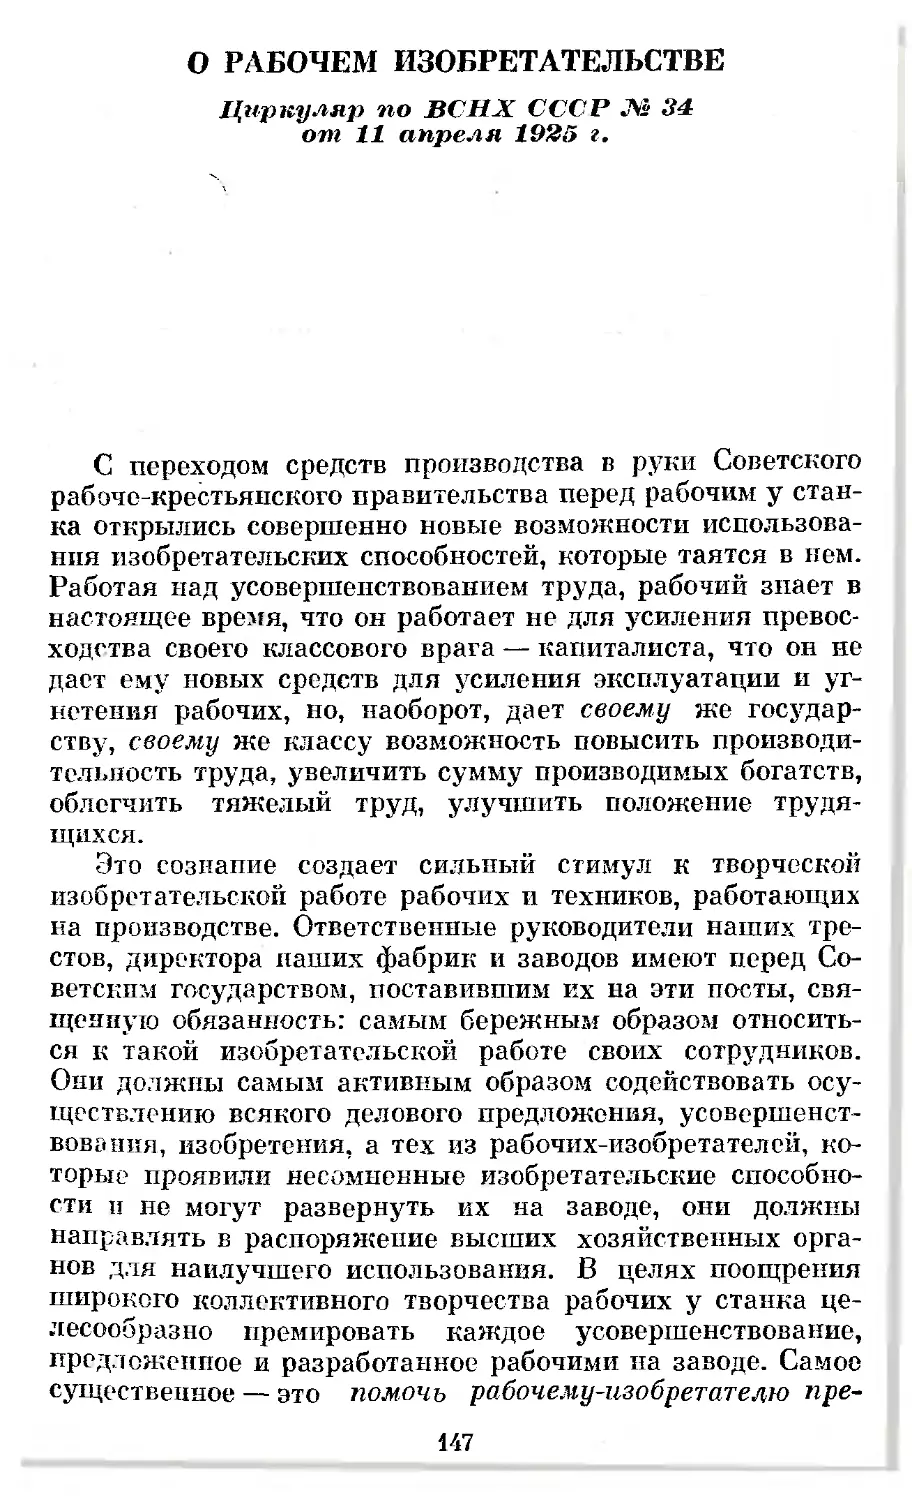 О рабочем изобретательстве. Циркуляр по ВСНХ СССР № 34 от 11 апреля 1925 г